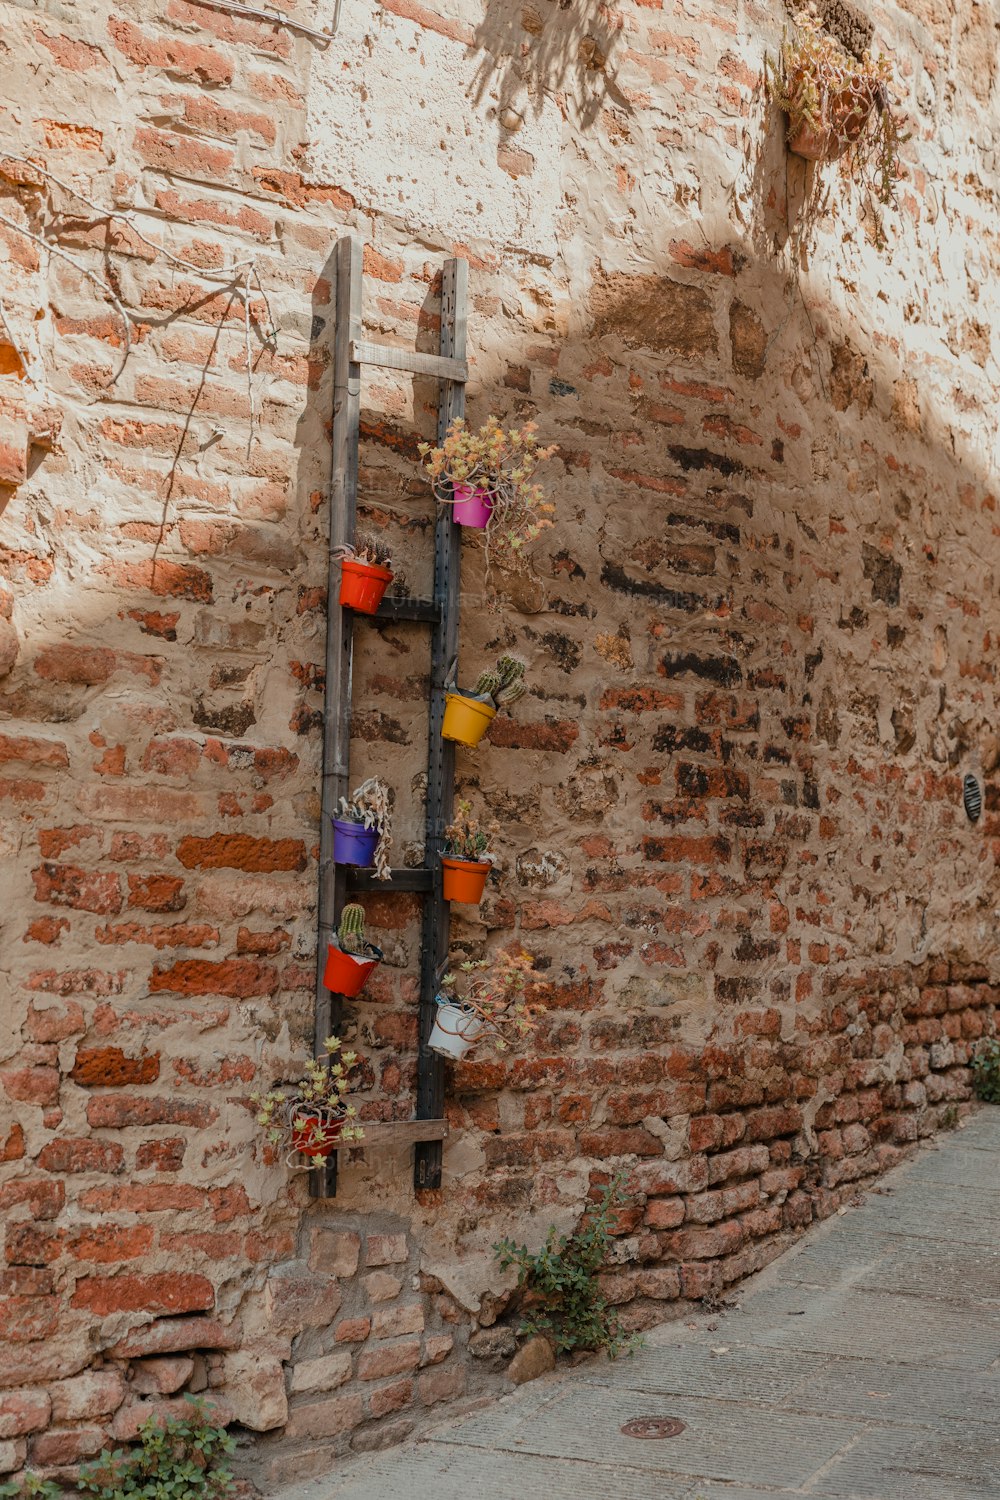 鉢植えの植物を保持するはしごのあるレンガの壁